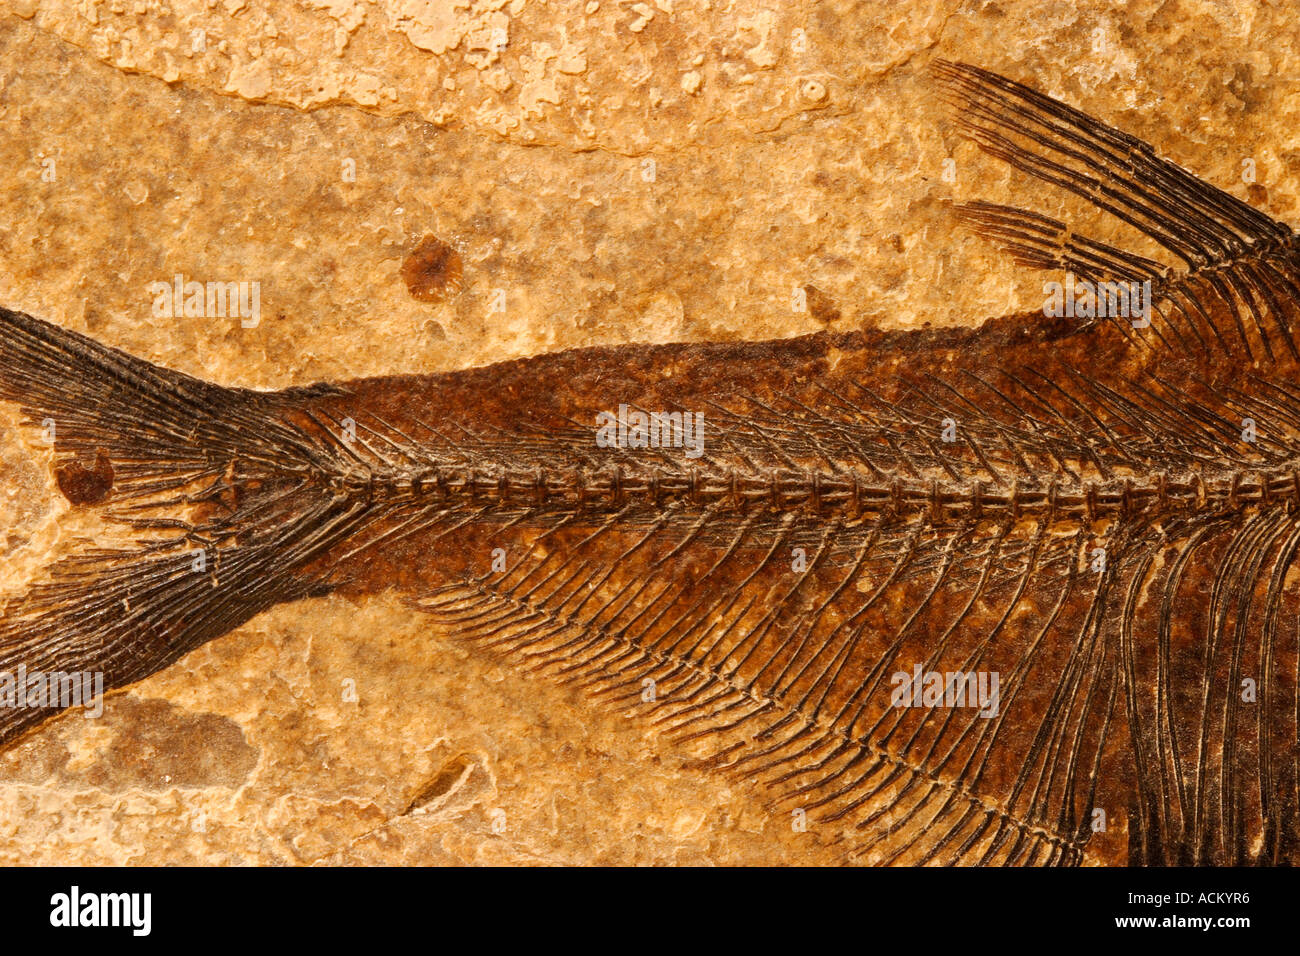 Dettaglio di un pesce fossile su una texture di sfondo di arenaria Foto Stock